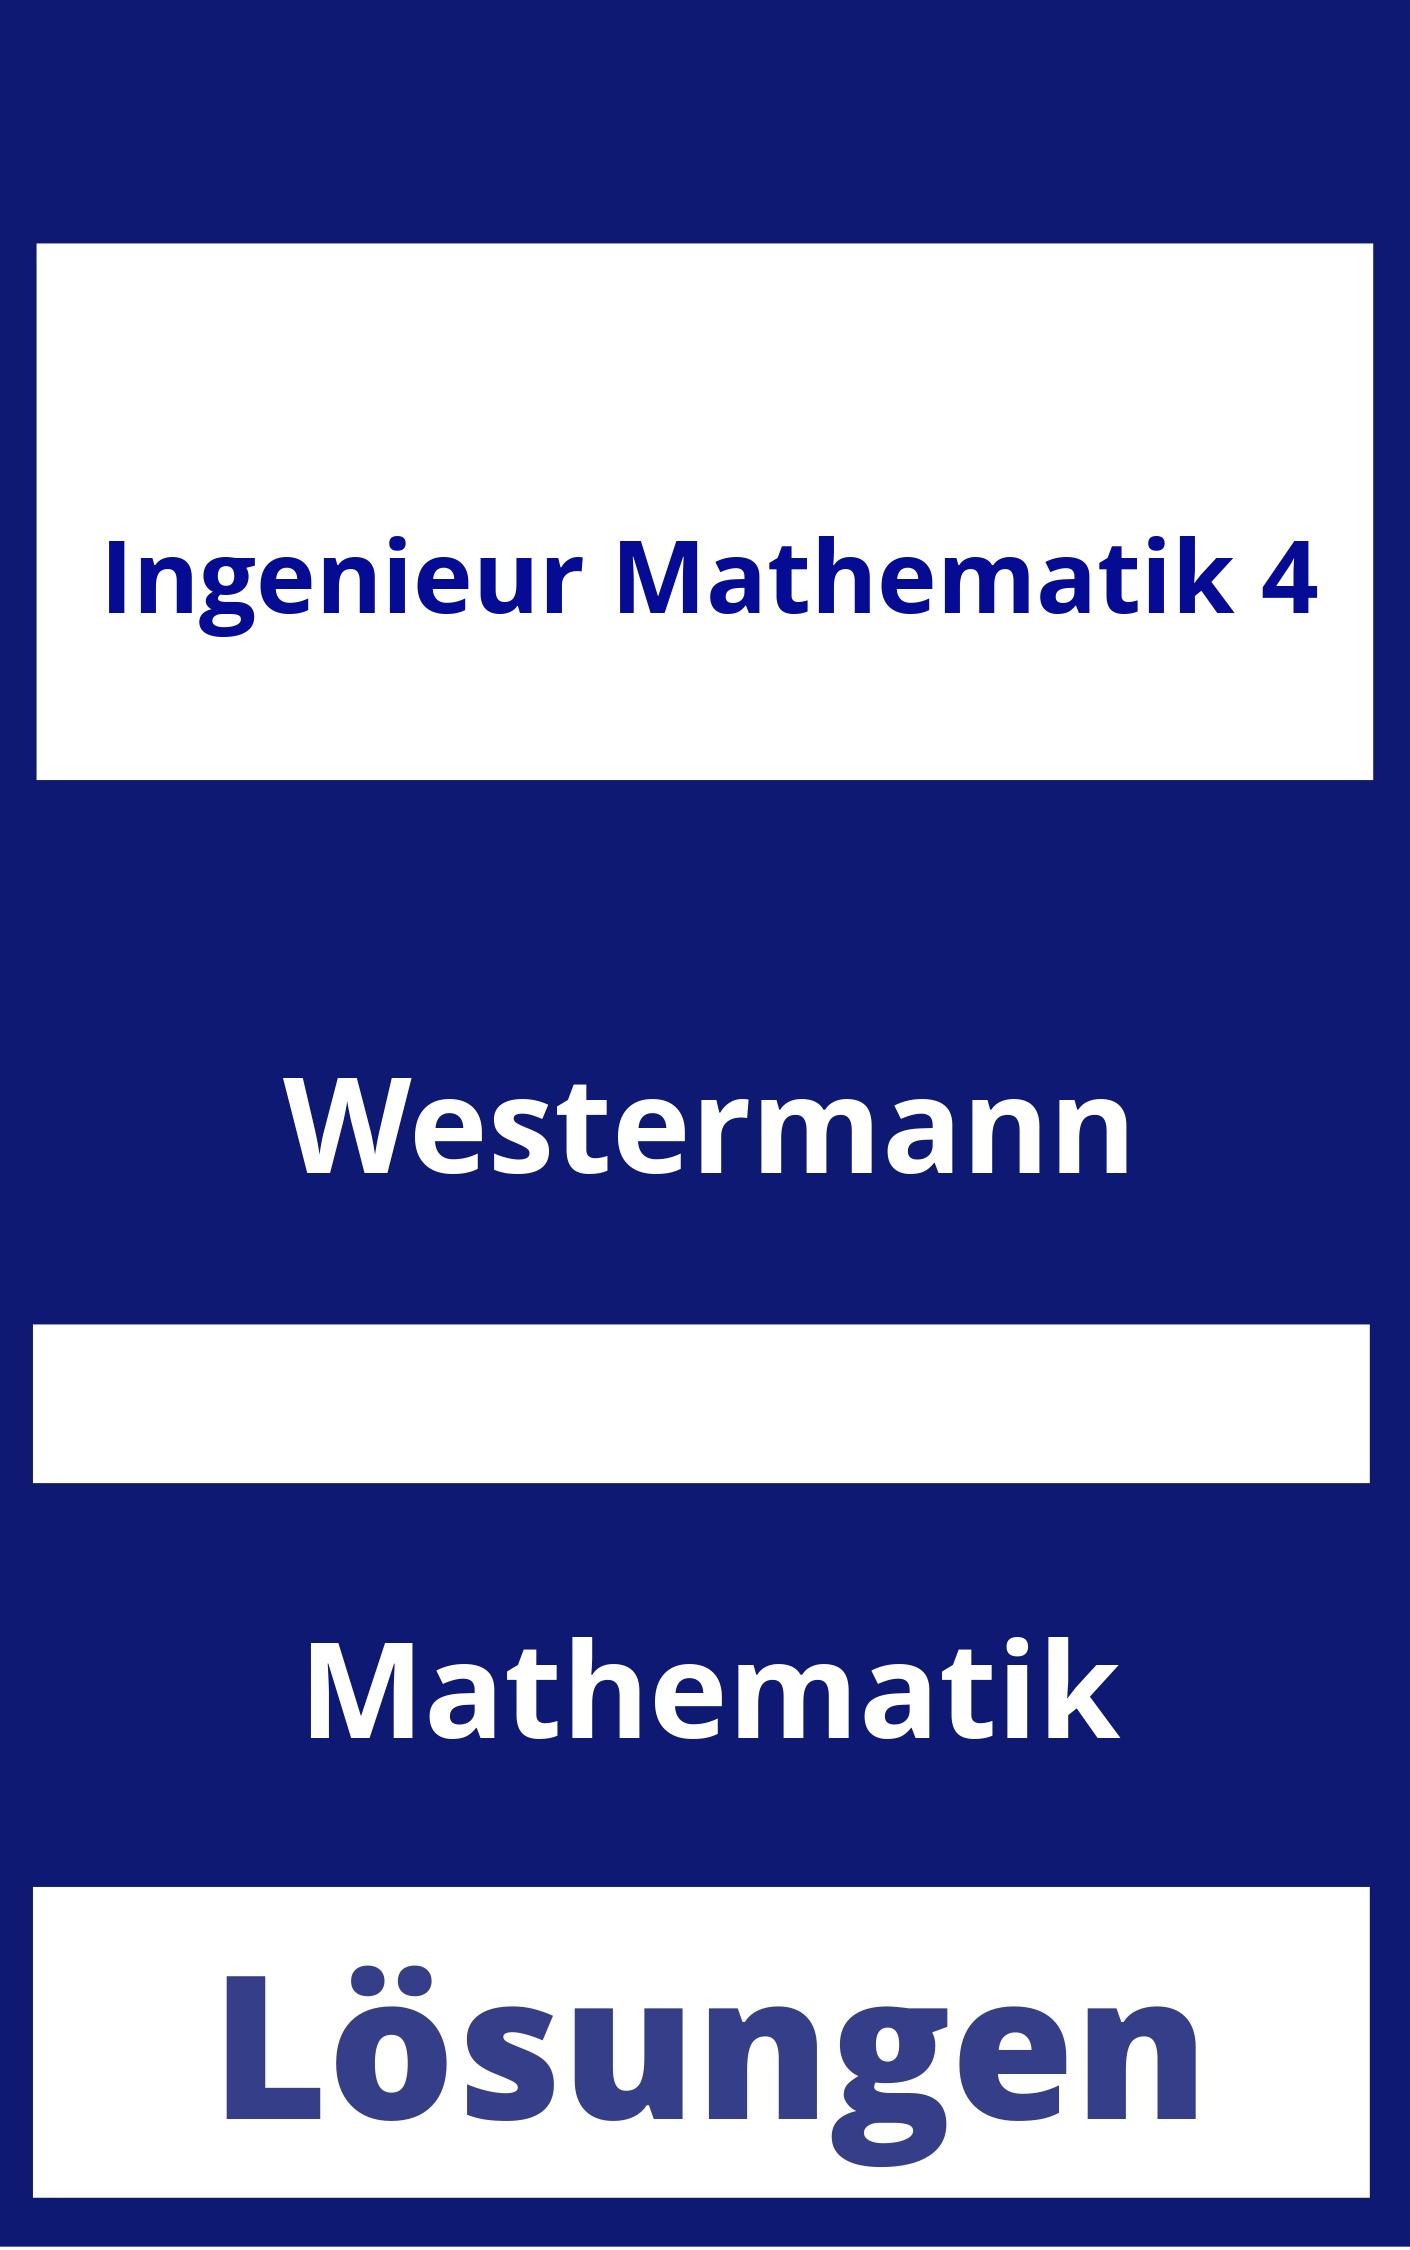 Ingenieur Mathematik 4 Lösungen PDF